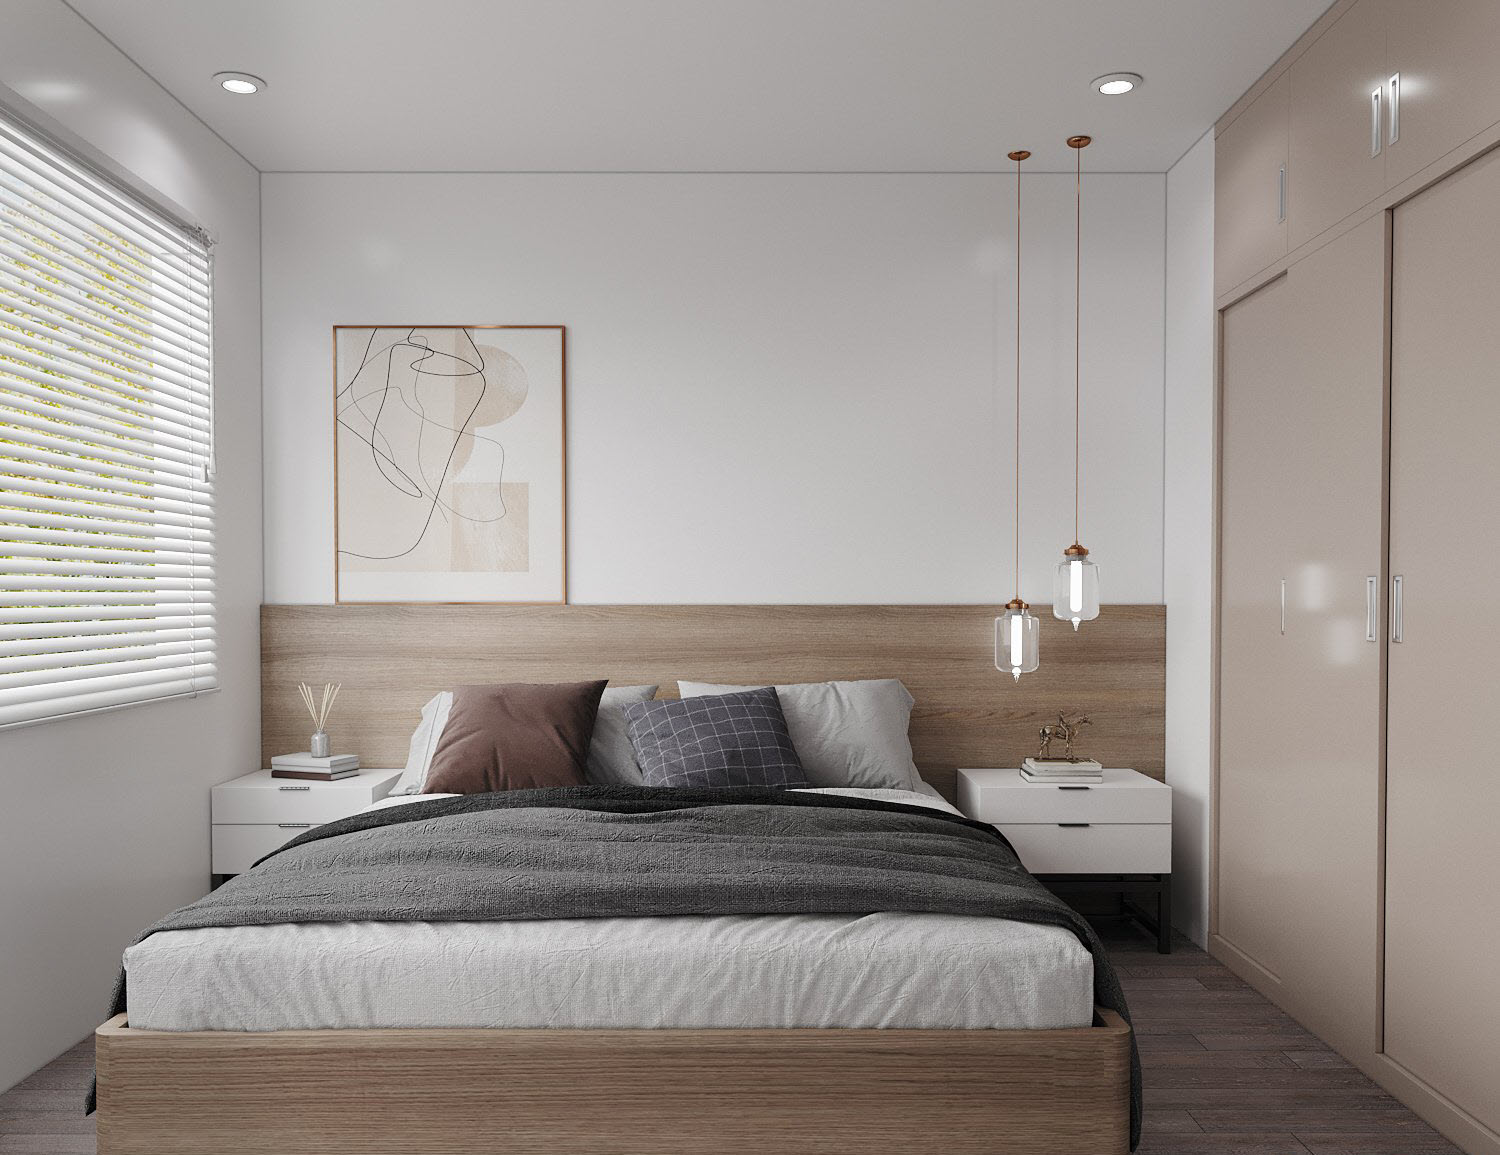 Phòng ngủ thứ hai có diện tích vừa phải, đủ để bố trí những tiện ích thiết yếu. Căn phòng được thiết kế theo phong cách hiện đại, tối giản đẹp mắt.